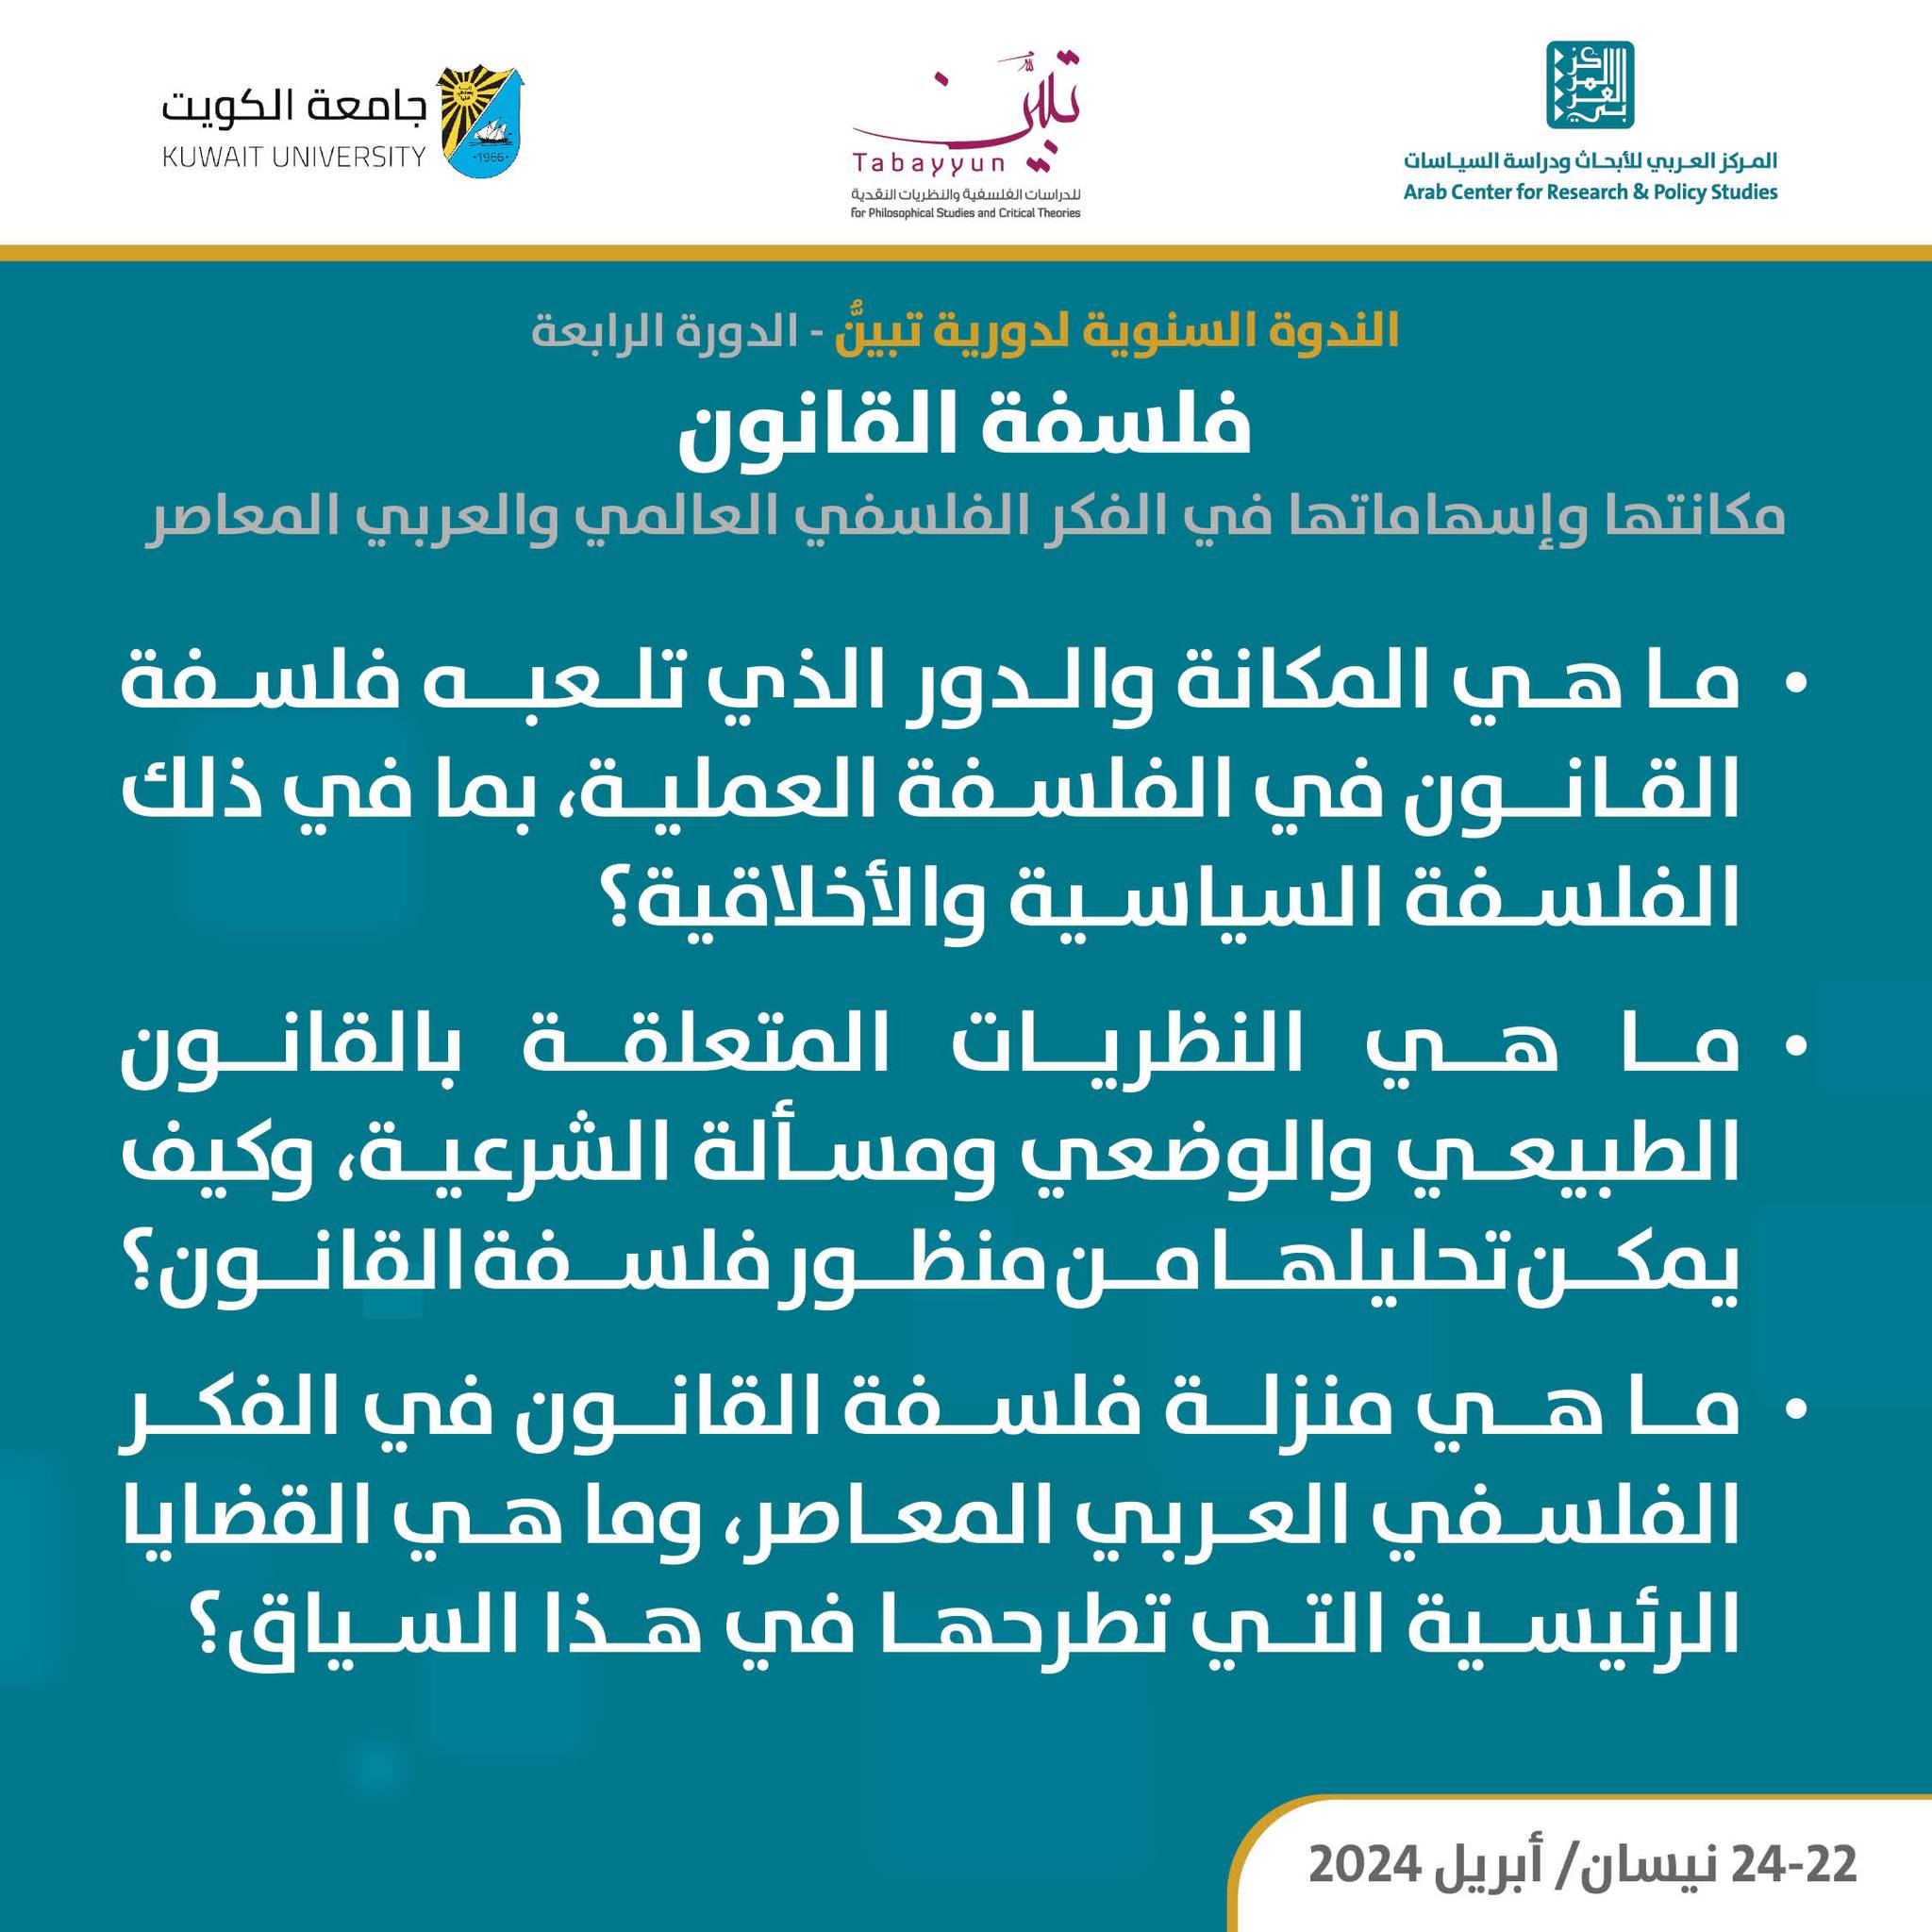  إنطلاق ندوة "فلسفة القانون" المنعقدة بالكويت بمشاركة أكدميين مغاربة + التسجيل الكامل لأطوار اليوم الأول